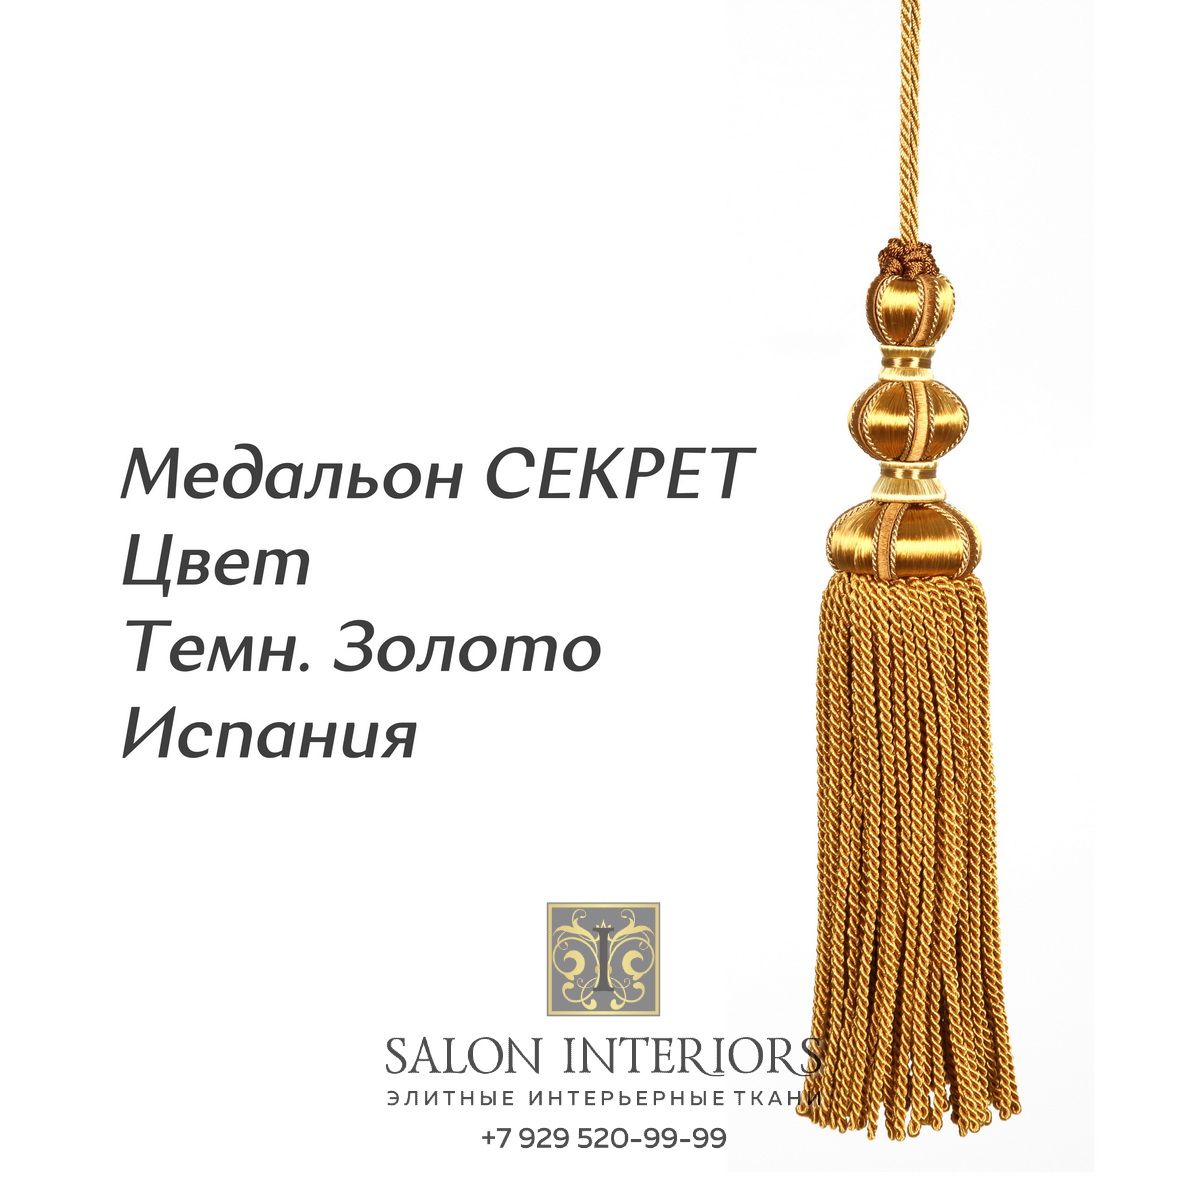 Медальон "СЕКРЕТ" Арт MK996A-2015 Цвет Темн.золото разм.27см Испания